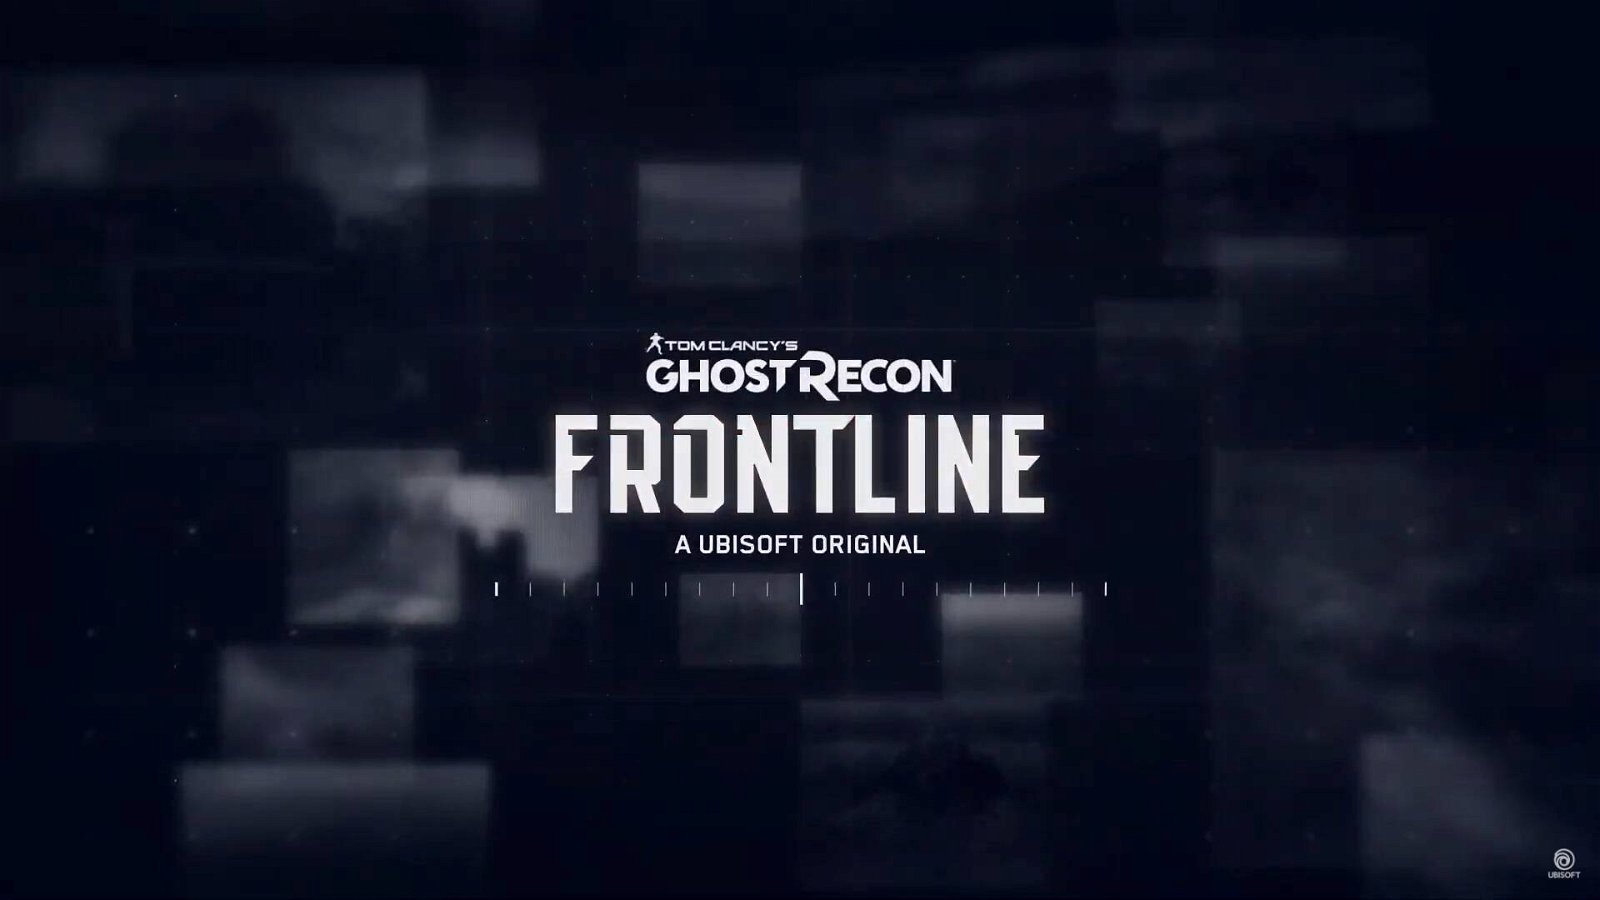 Immagine di Ghost Recon Frontline, emerge un video di gameplay, ma la community non è soddisfatta